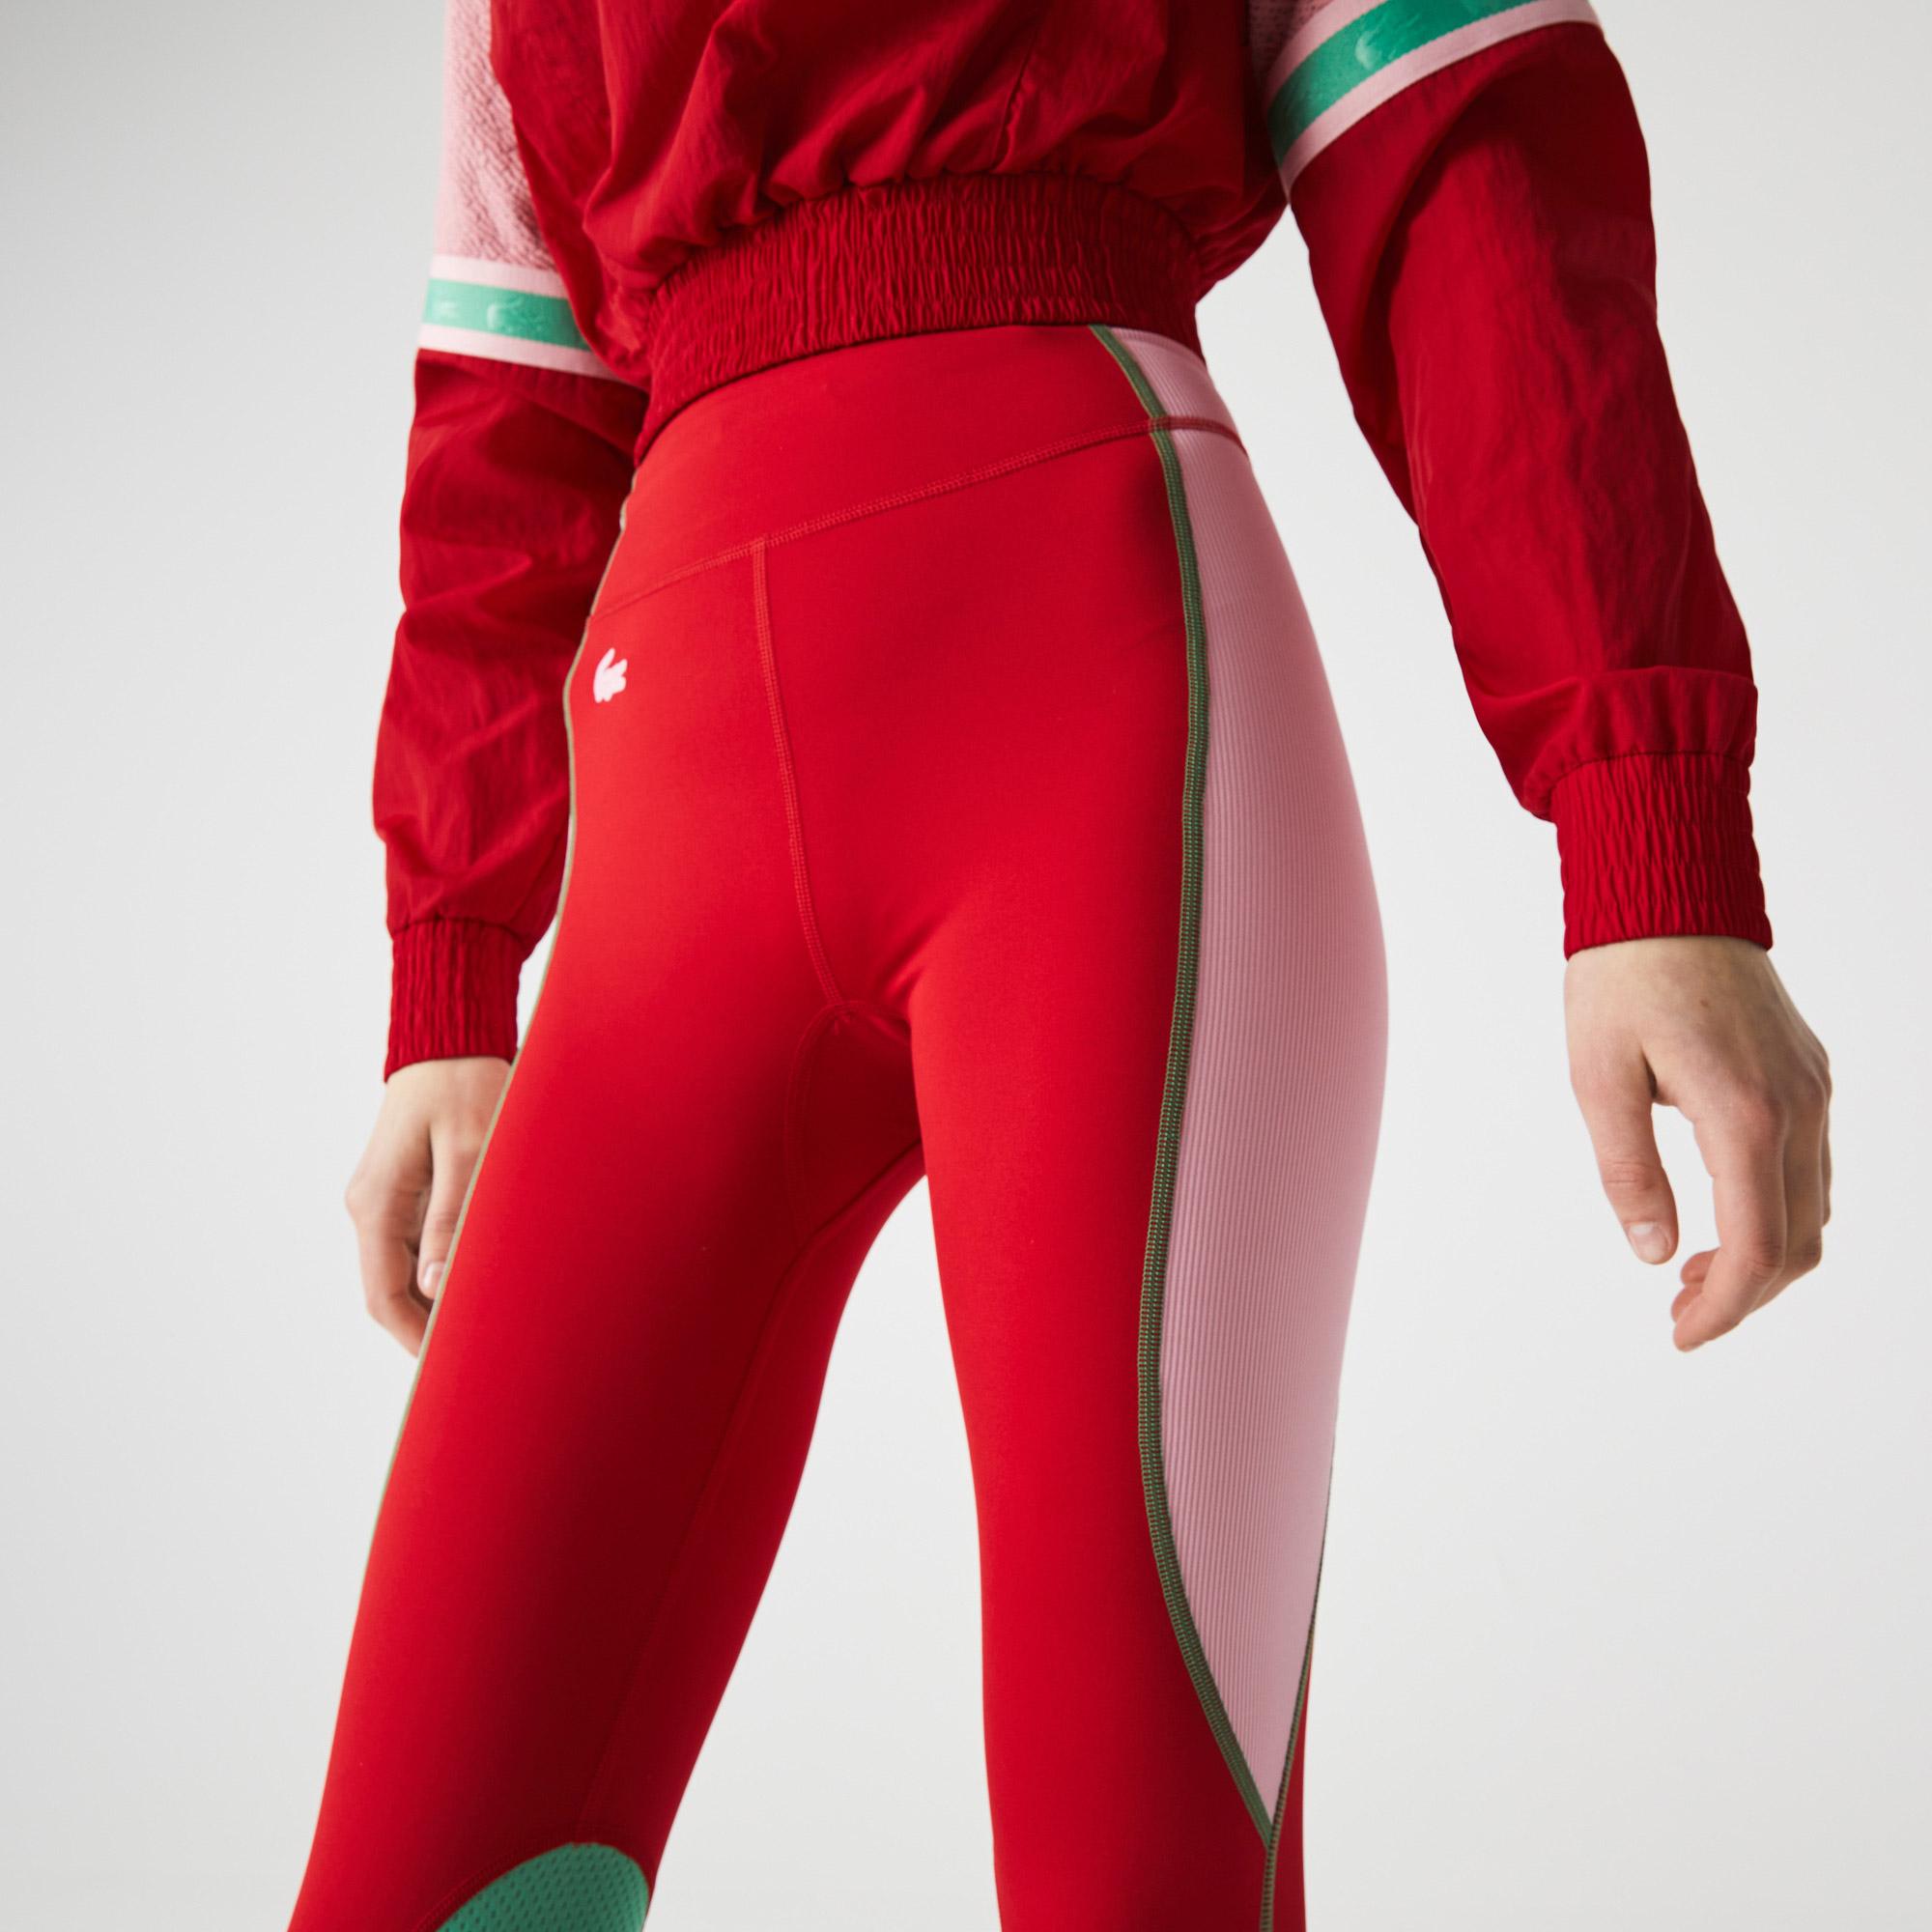 Lacoste Női SPORT színes blokkos kötött leggings nadrág. 7